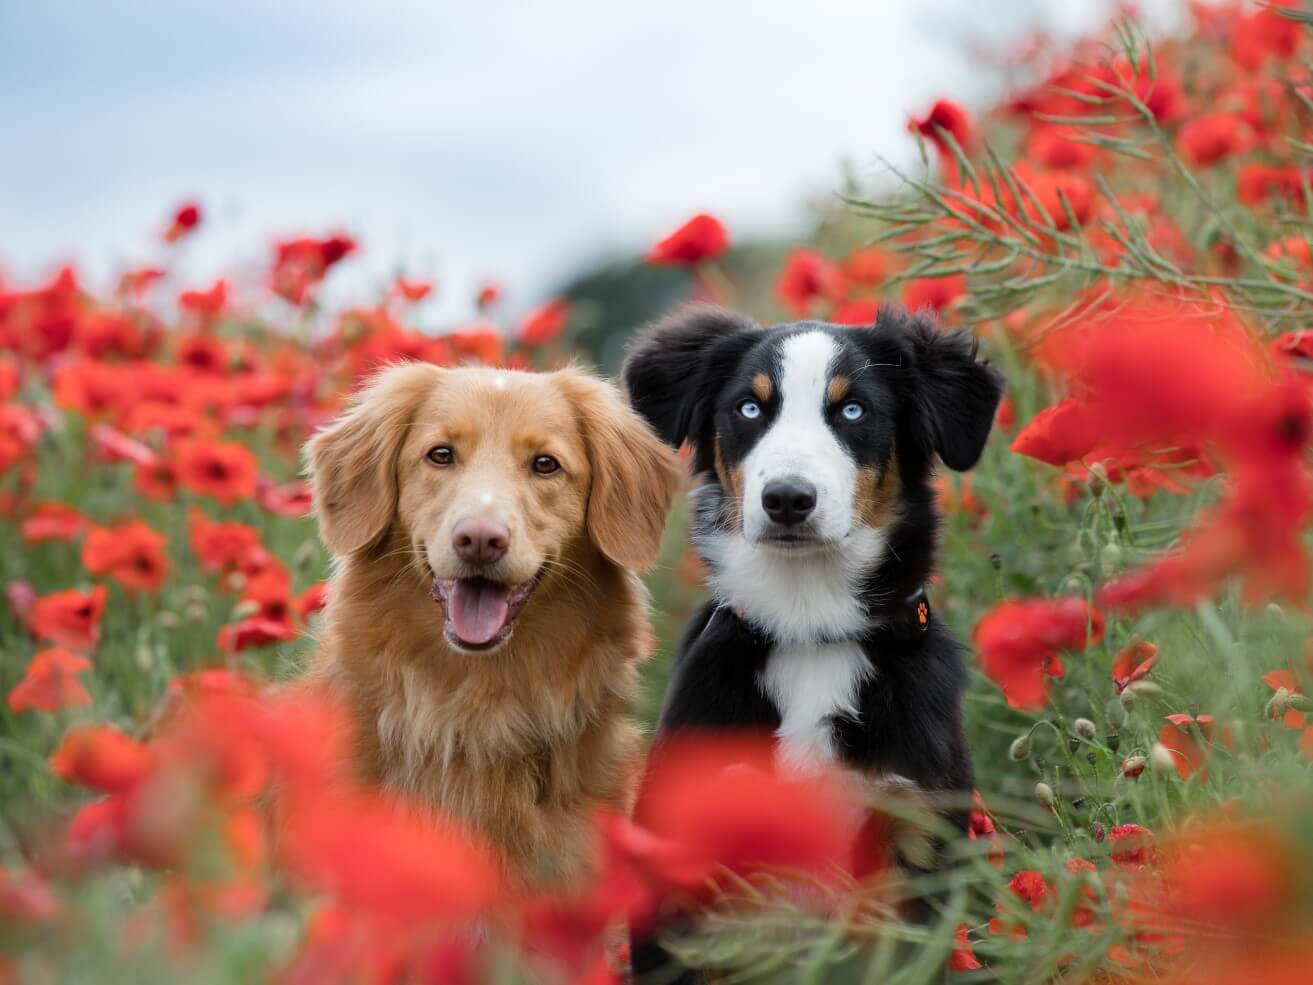 Dogs in poppy field